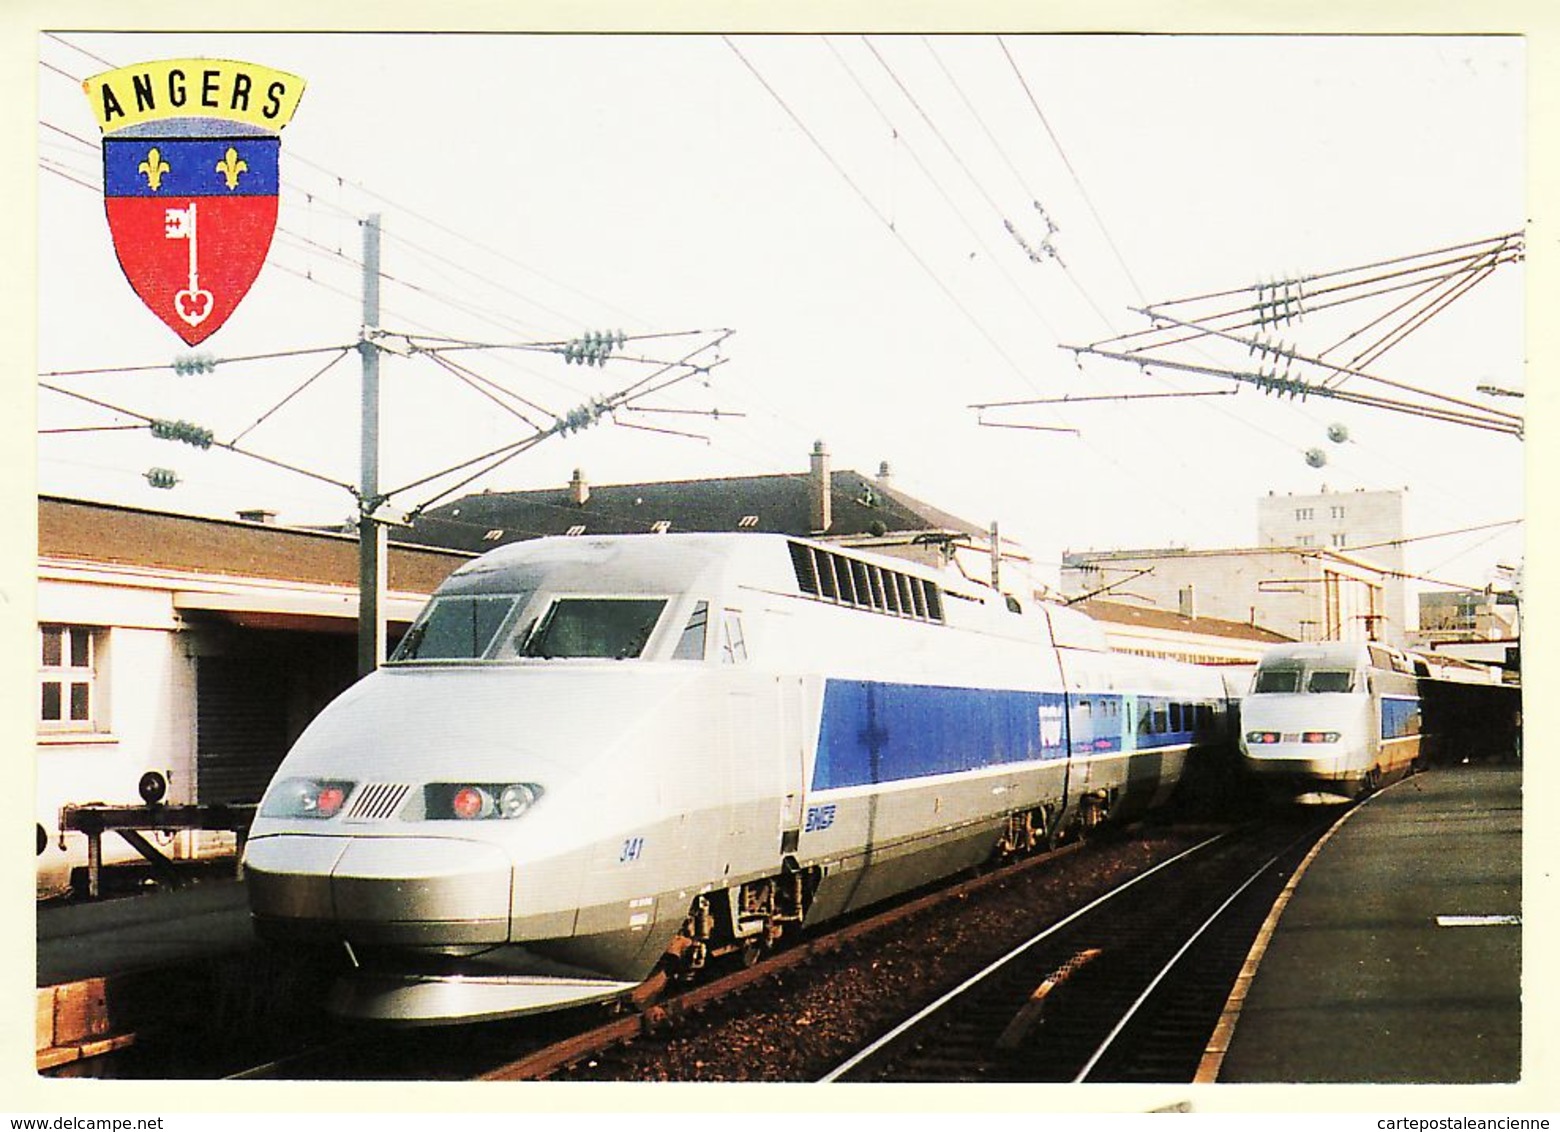 X49100 ANGERS Gare SAINT-LAUD 27 Janvier 1990 Baptême Rame TGV Train 8826 Photo LEROY 300 Exemplaires Maine-et-Loire - Angers